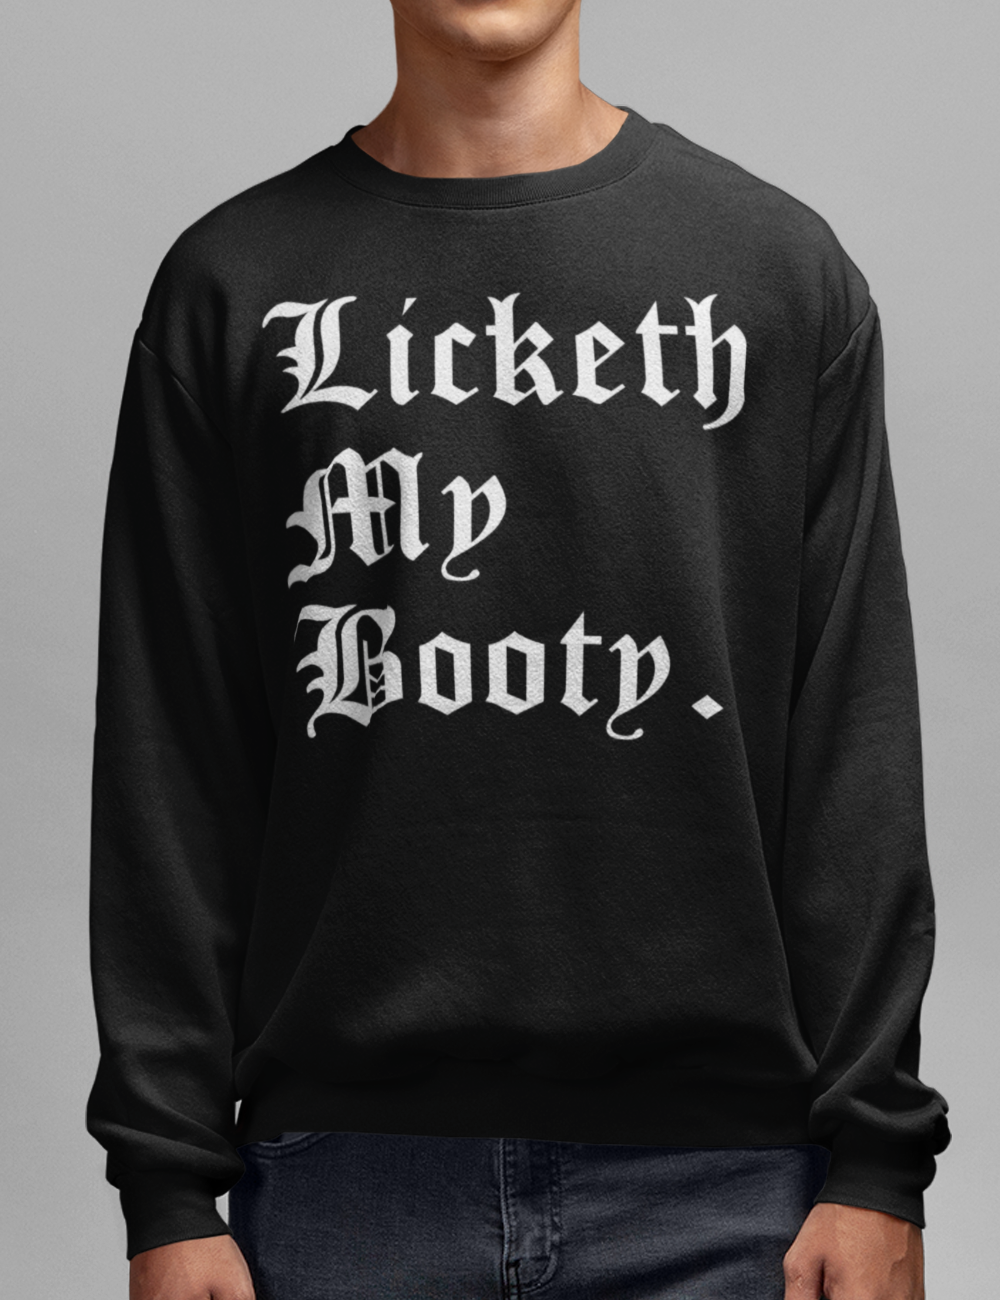 Licketh My Booty | Crewneck Sweatshirt OniTakai